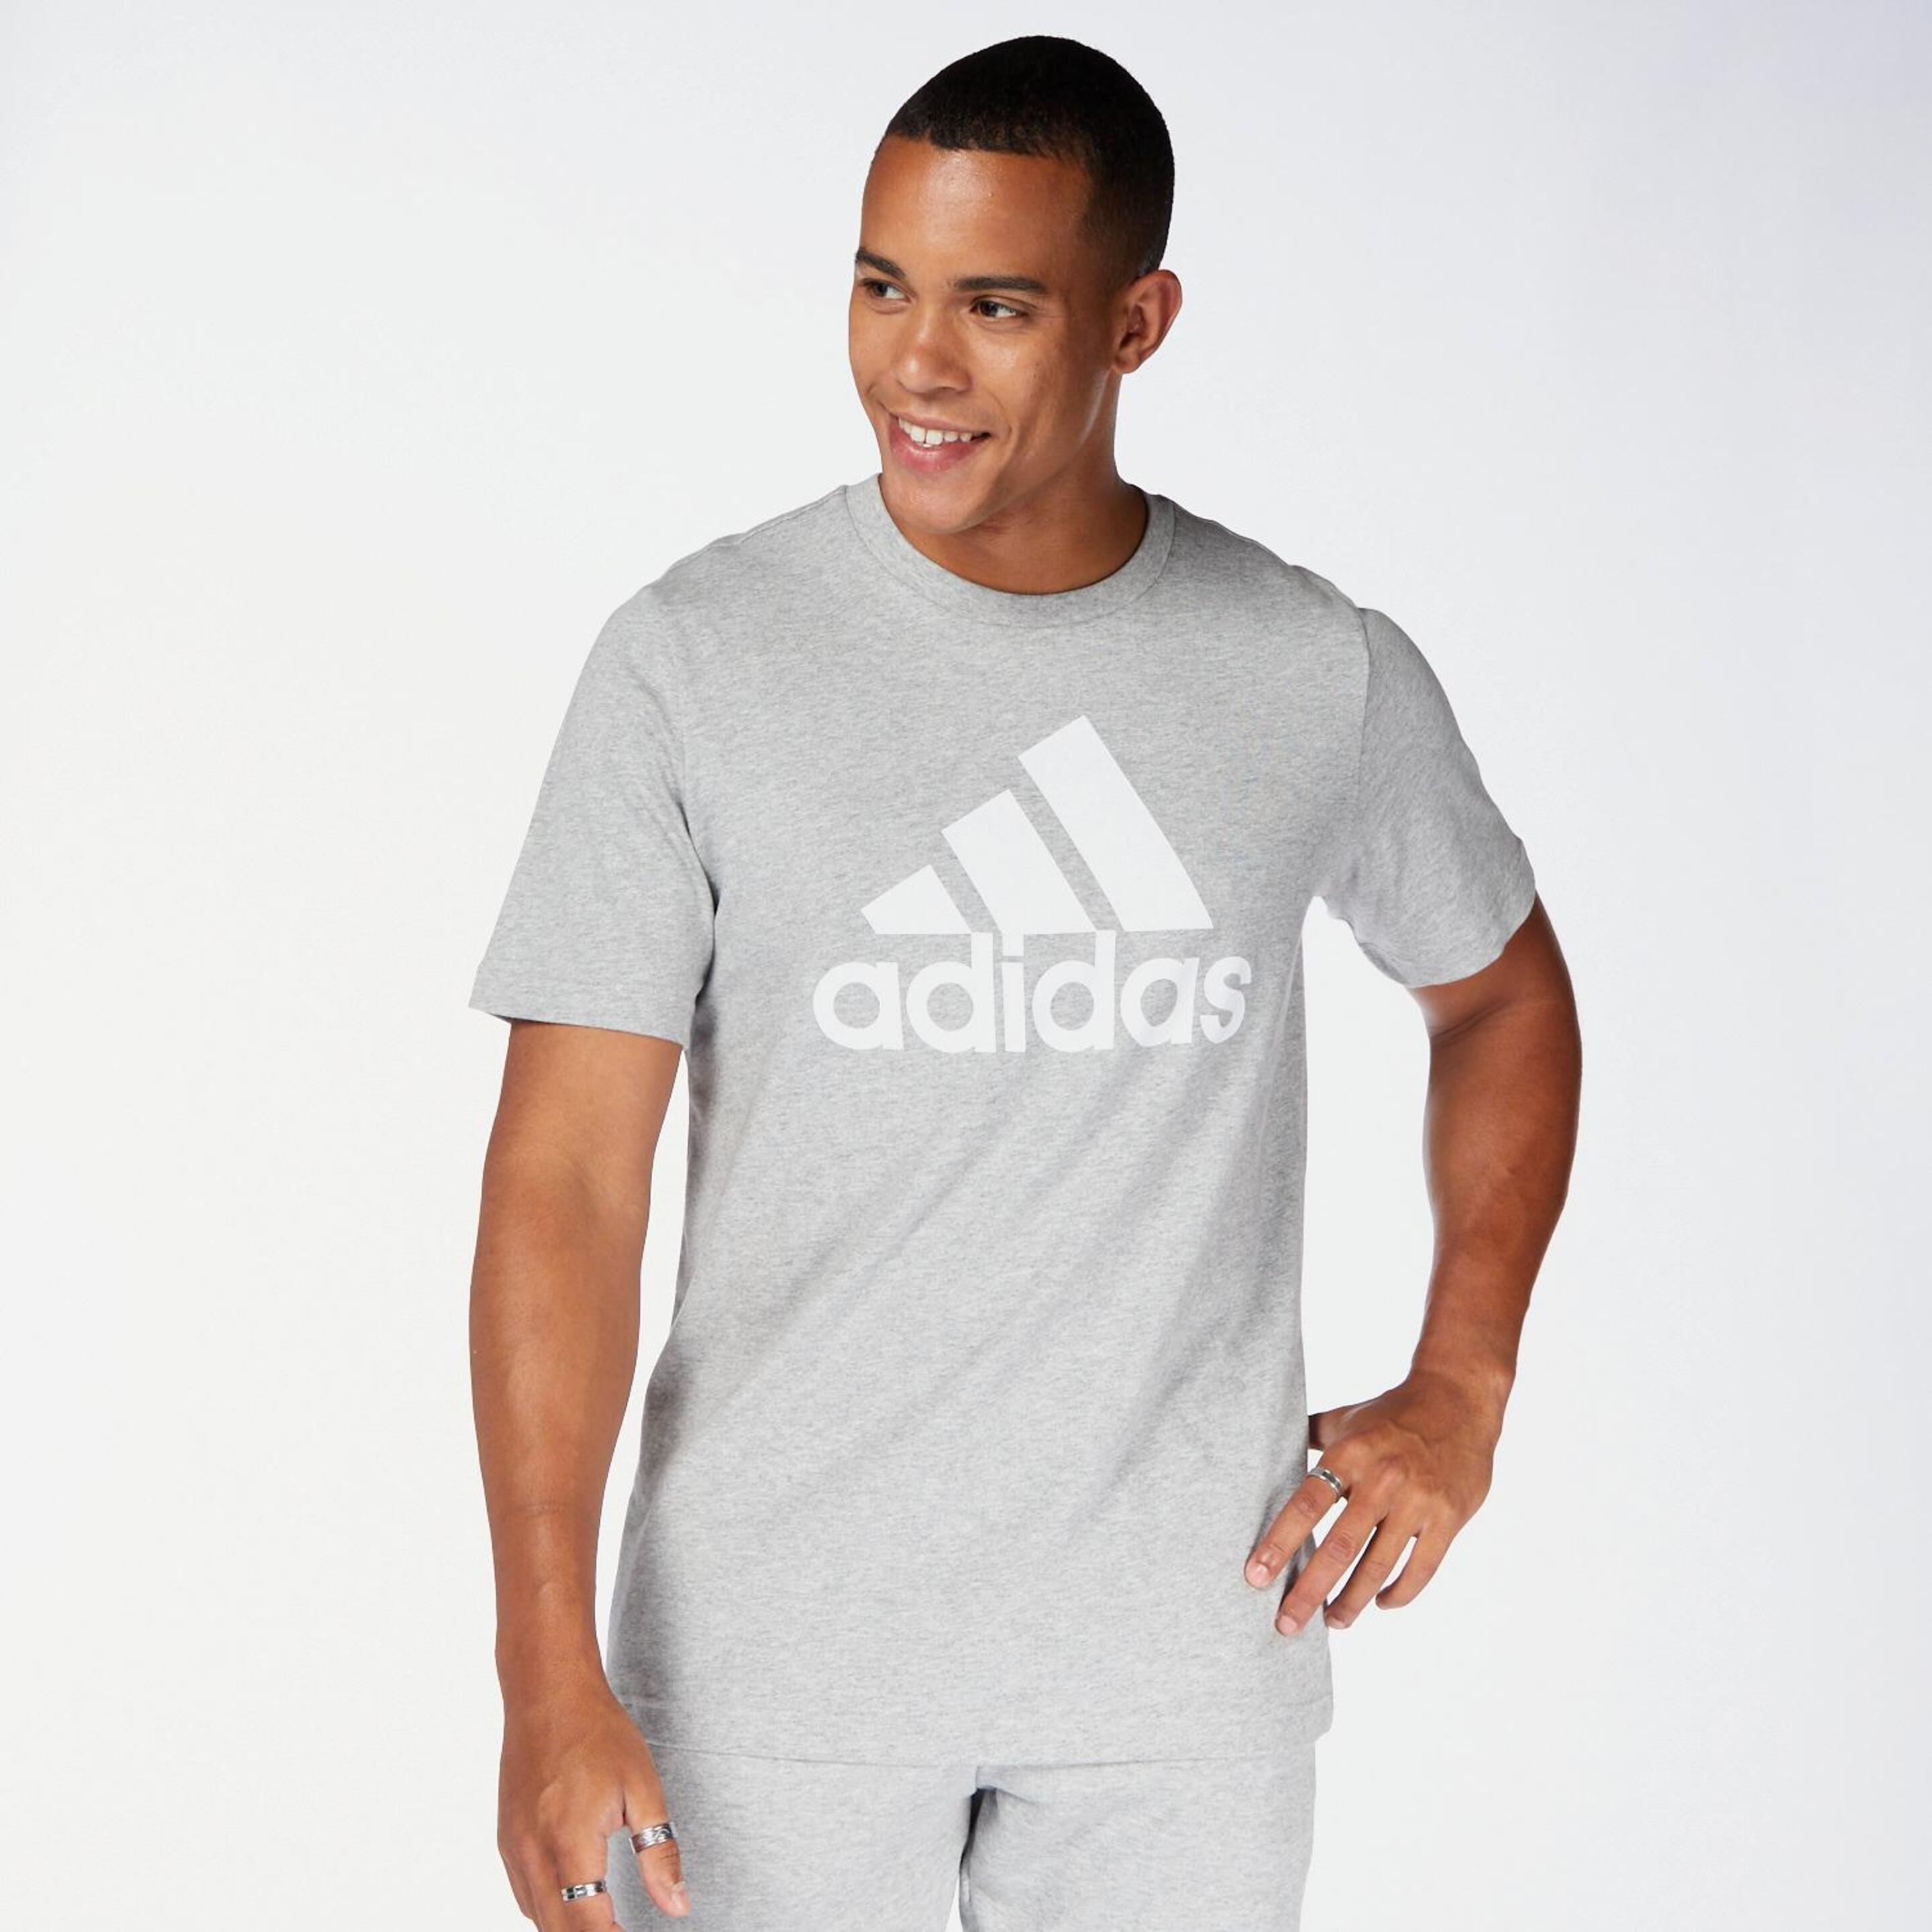 adidas Big Logo - gris - Camiseta Hombre